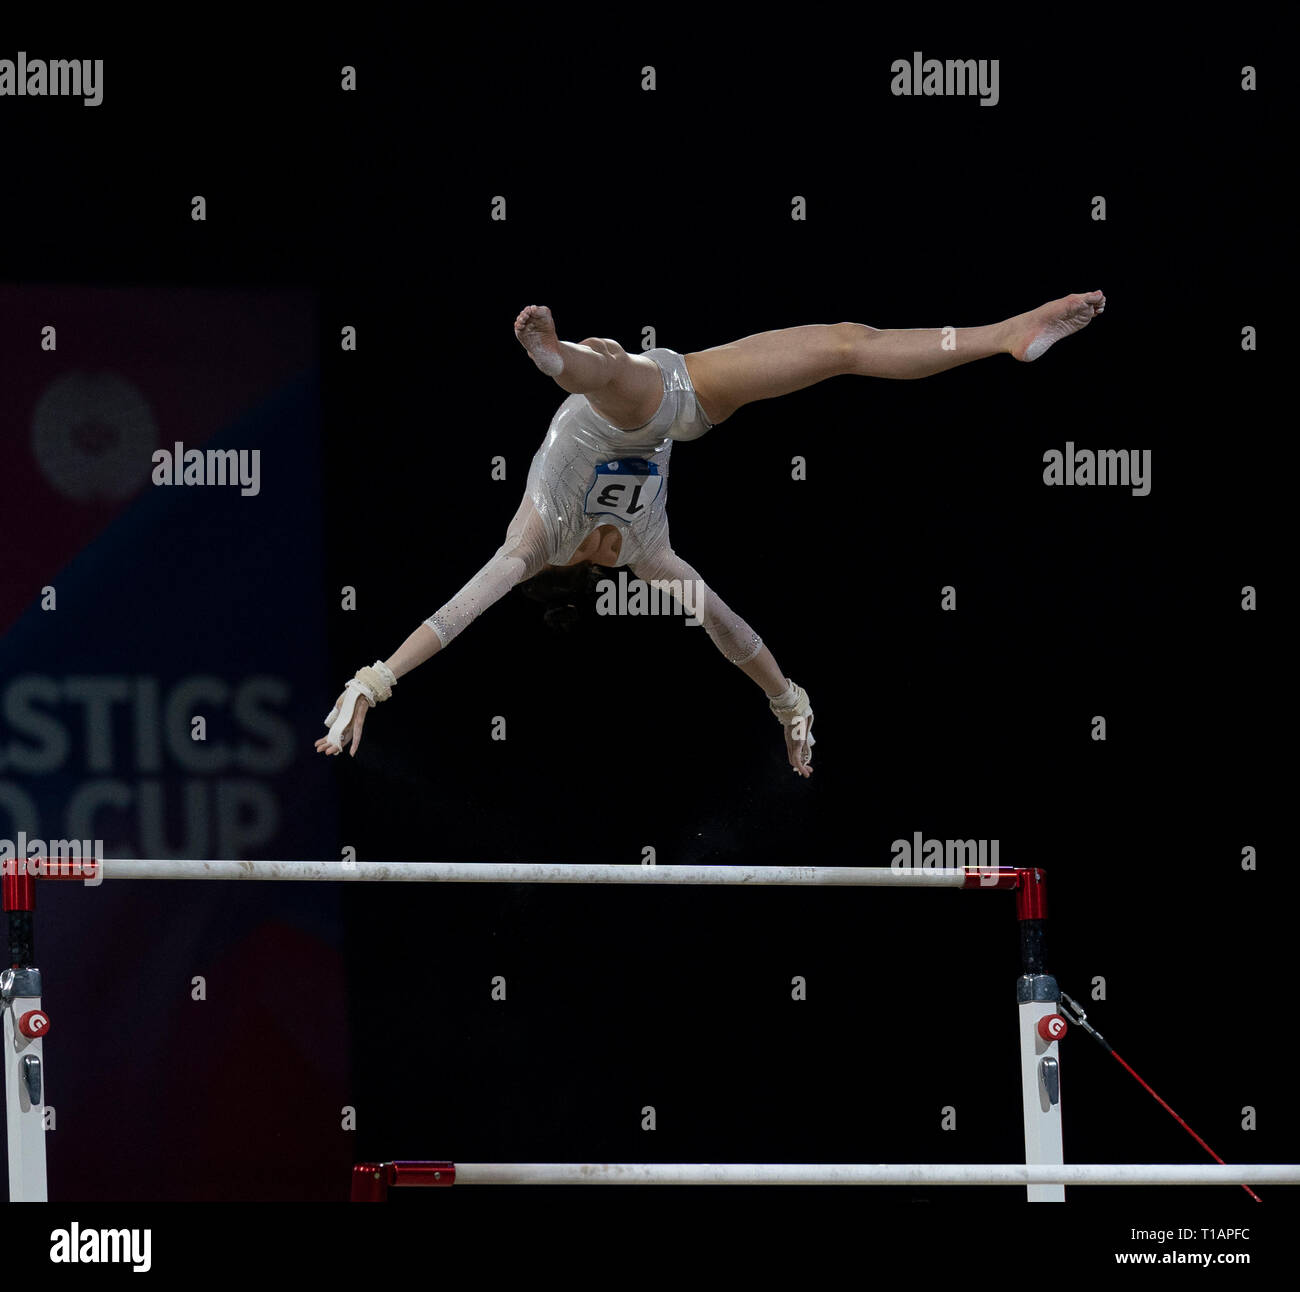 Jieyu Liu (Chine) vu en action lors de la Coupe du Monde de Gymnastique 2019 à Birmingham dans l'Arène de Genting. Banque D'Images